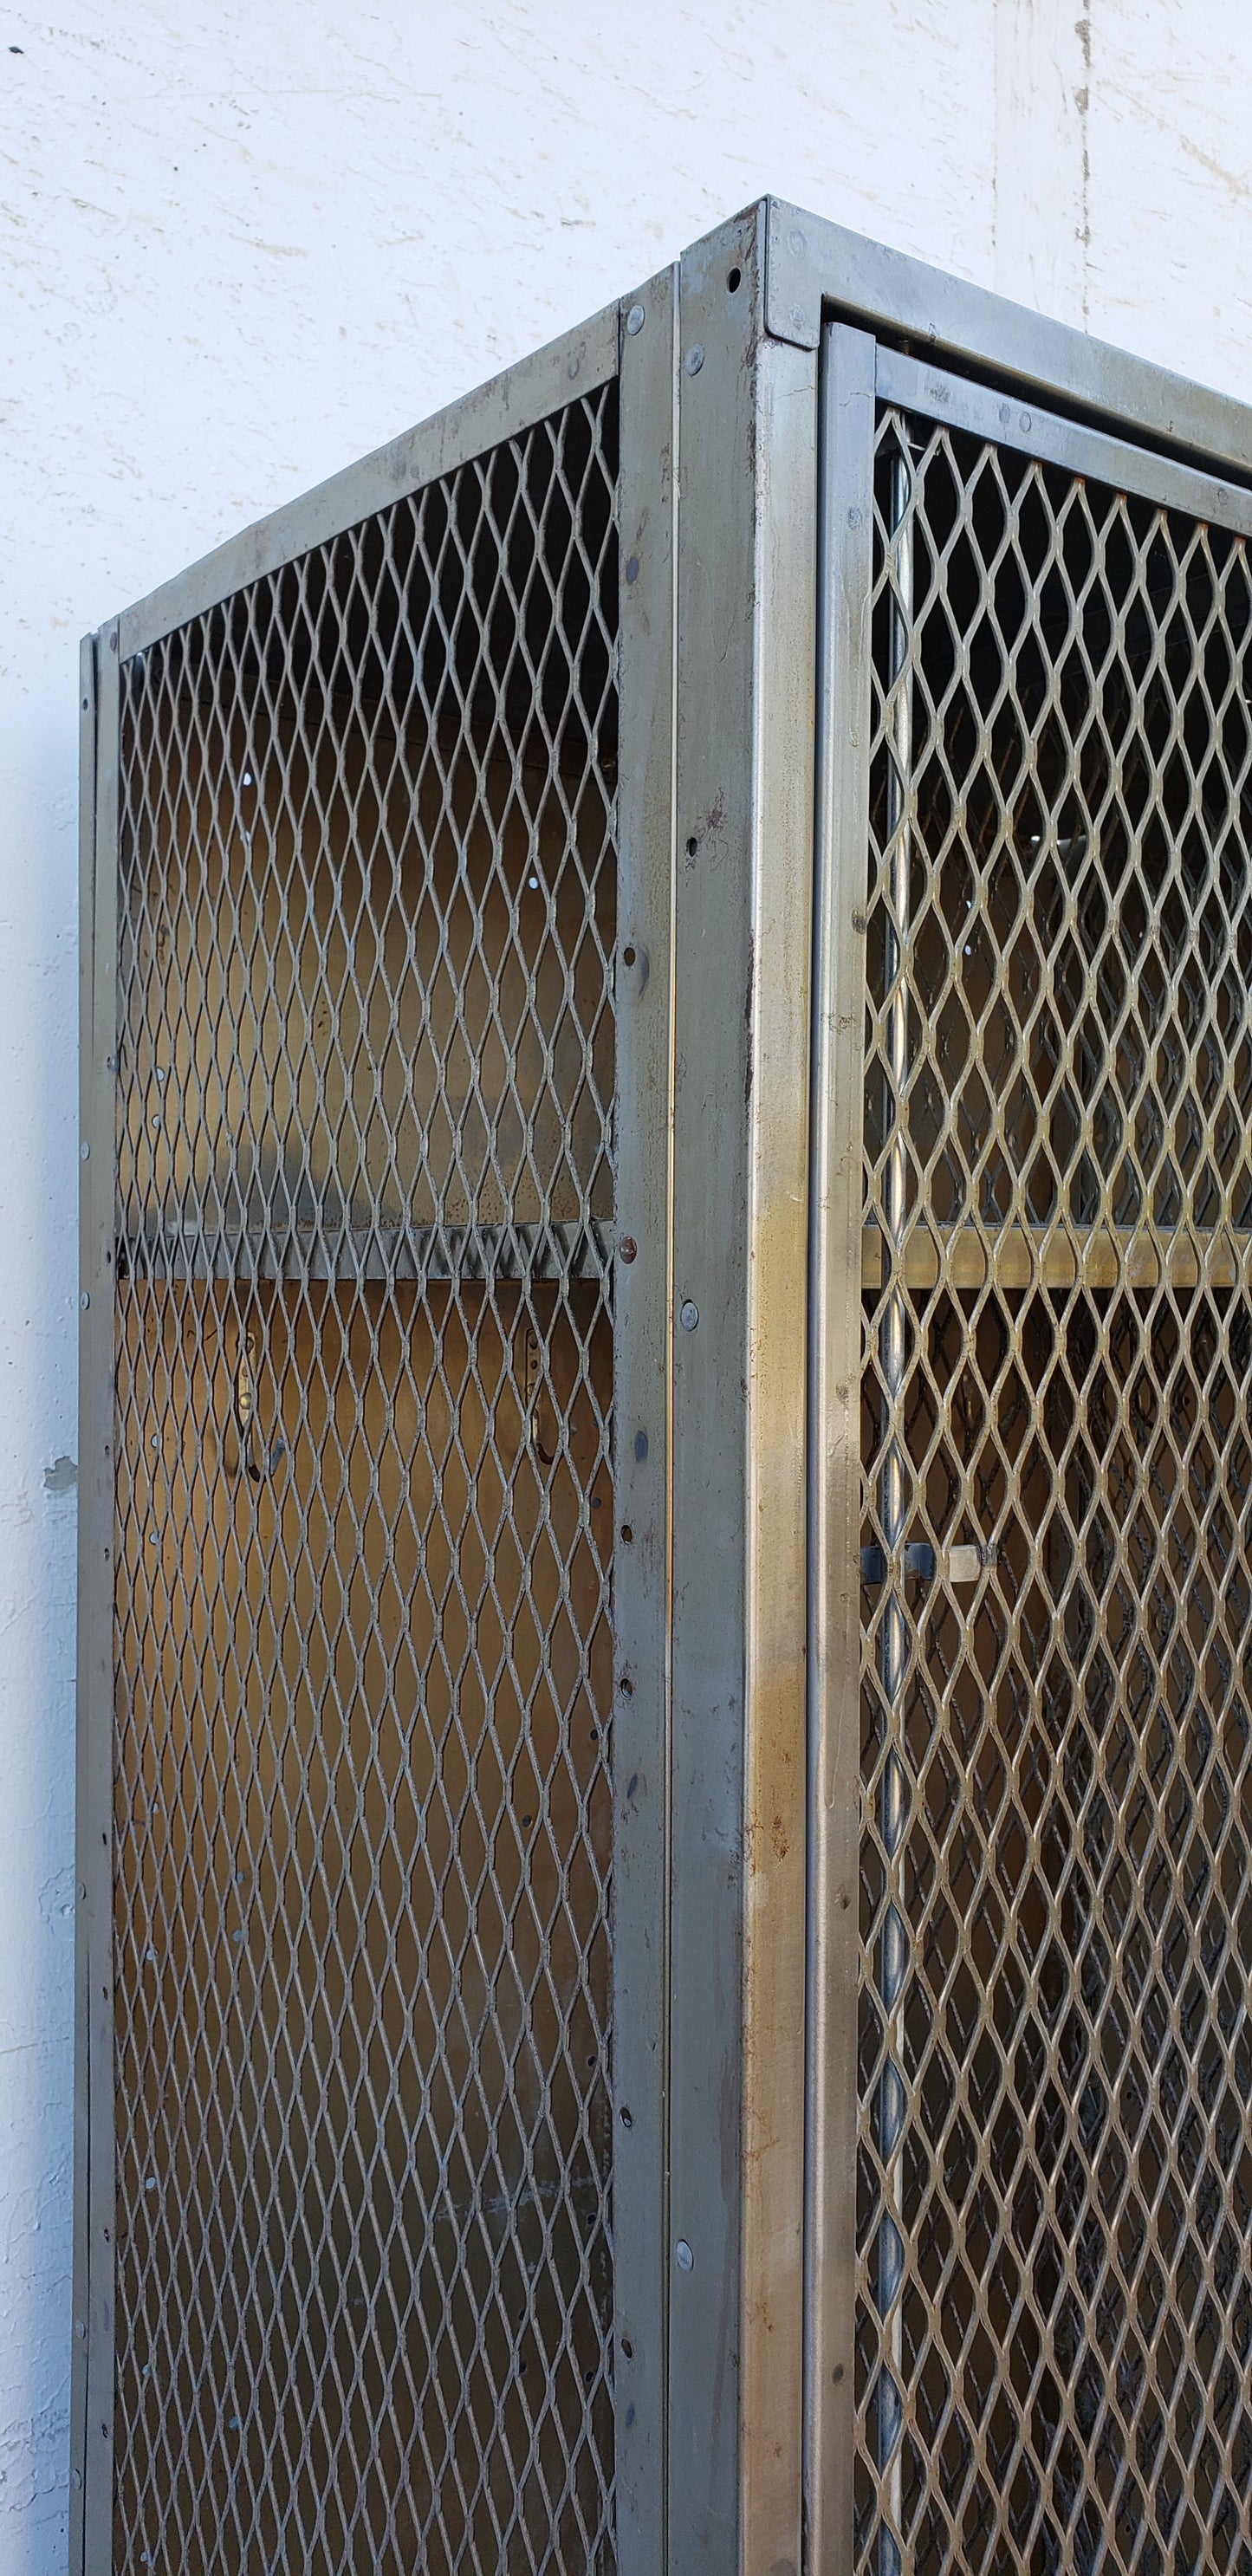 Stripped Mesh Lockers on Base